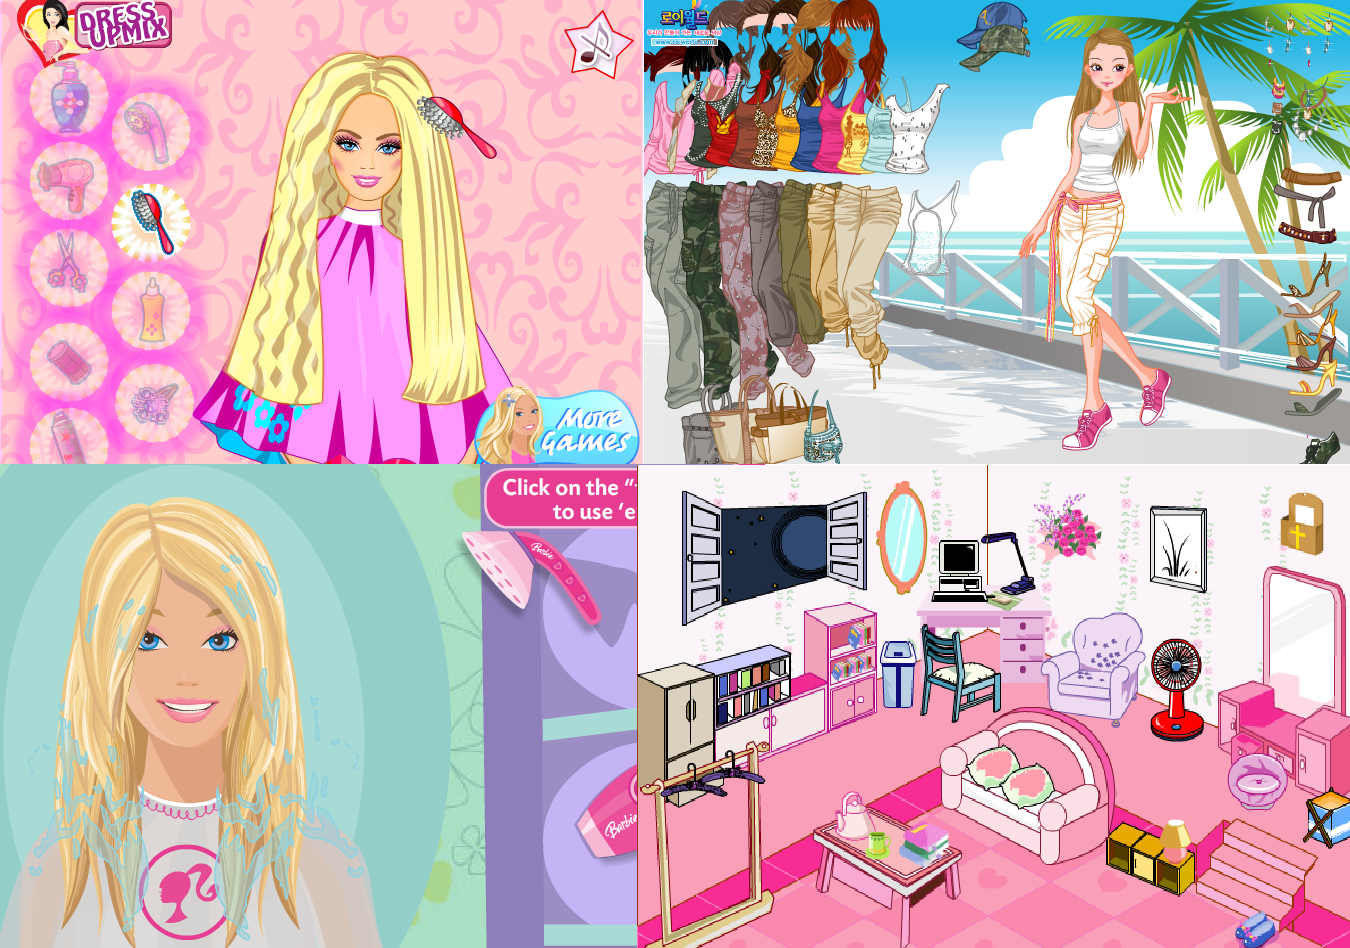 Jogue Vestir-se Barbie em Arendelle, um jogo de Barbie